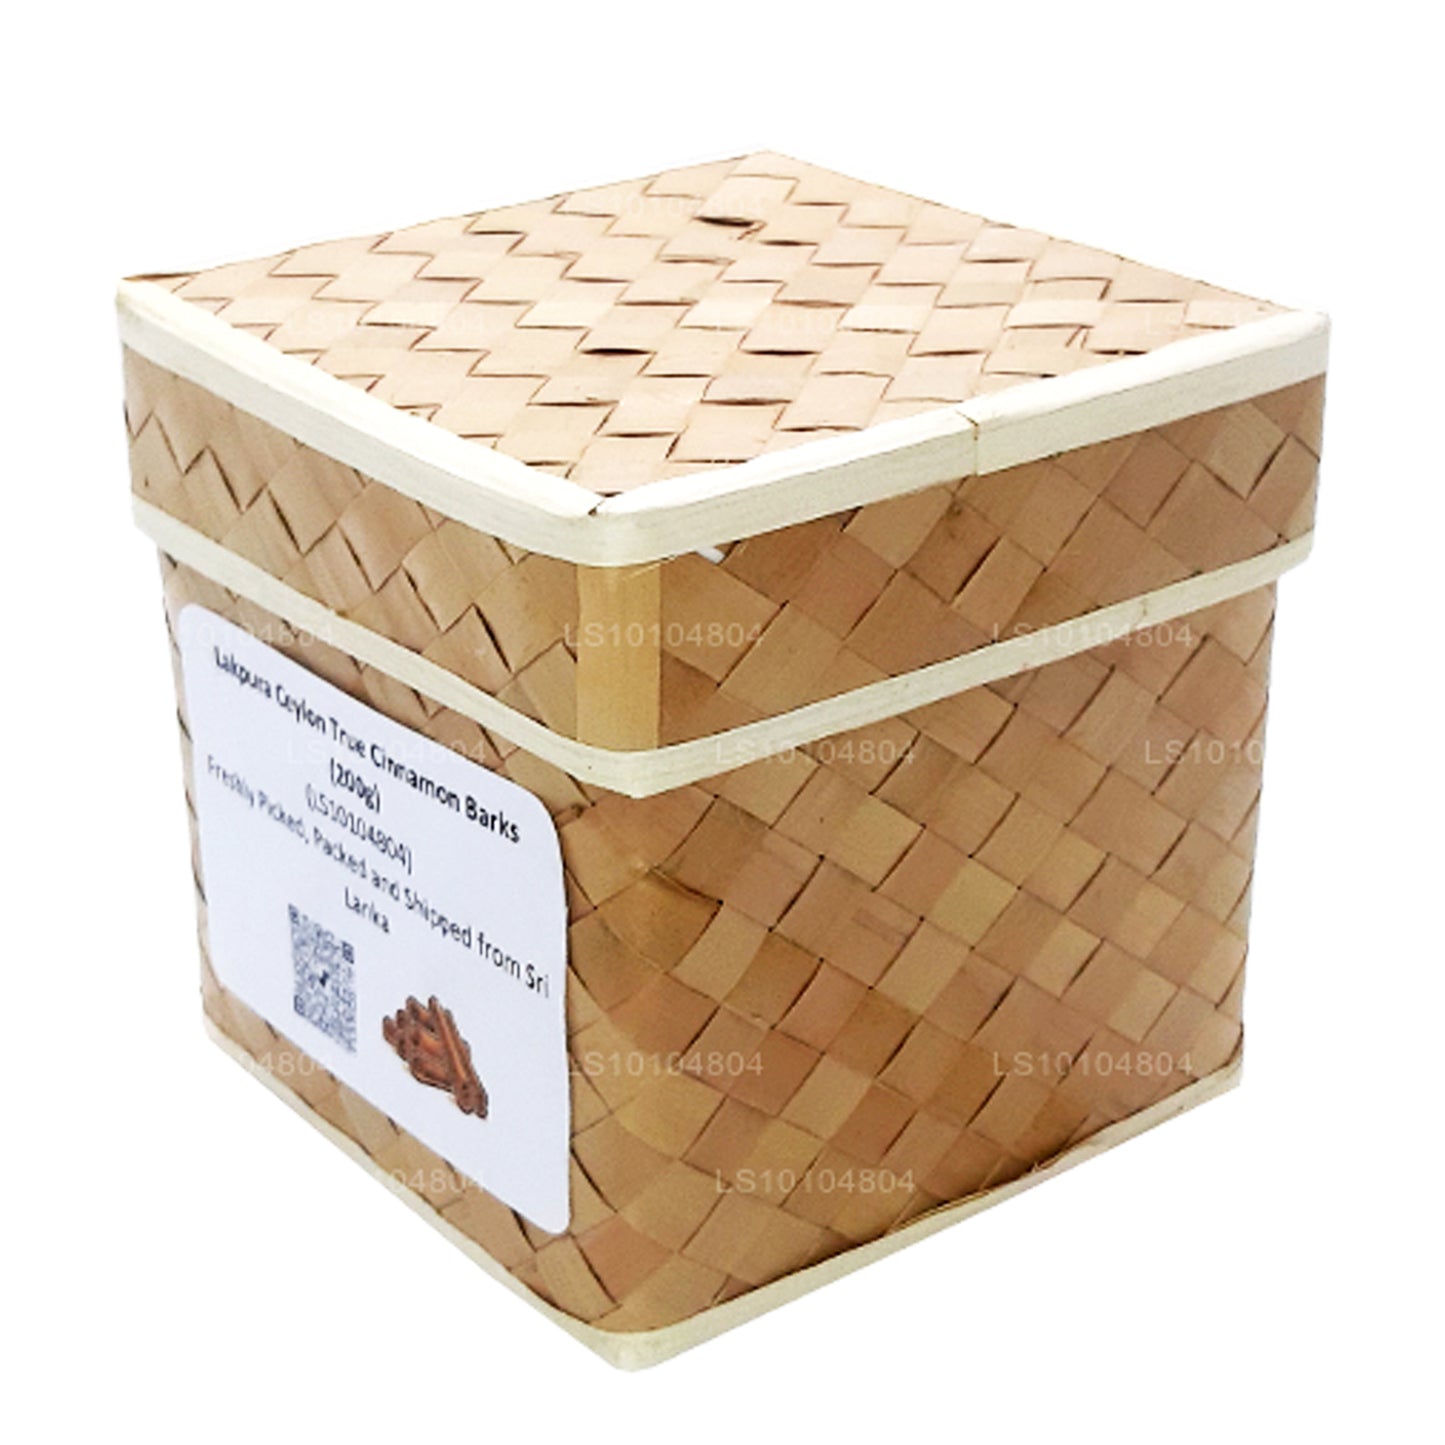 Boîte d'écorces de cannelle véritable de Ceylan biologiques (200 g) Lakpura